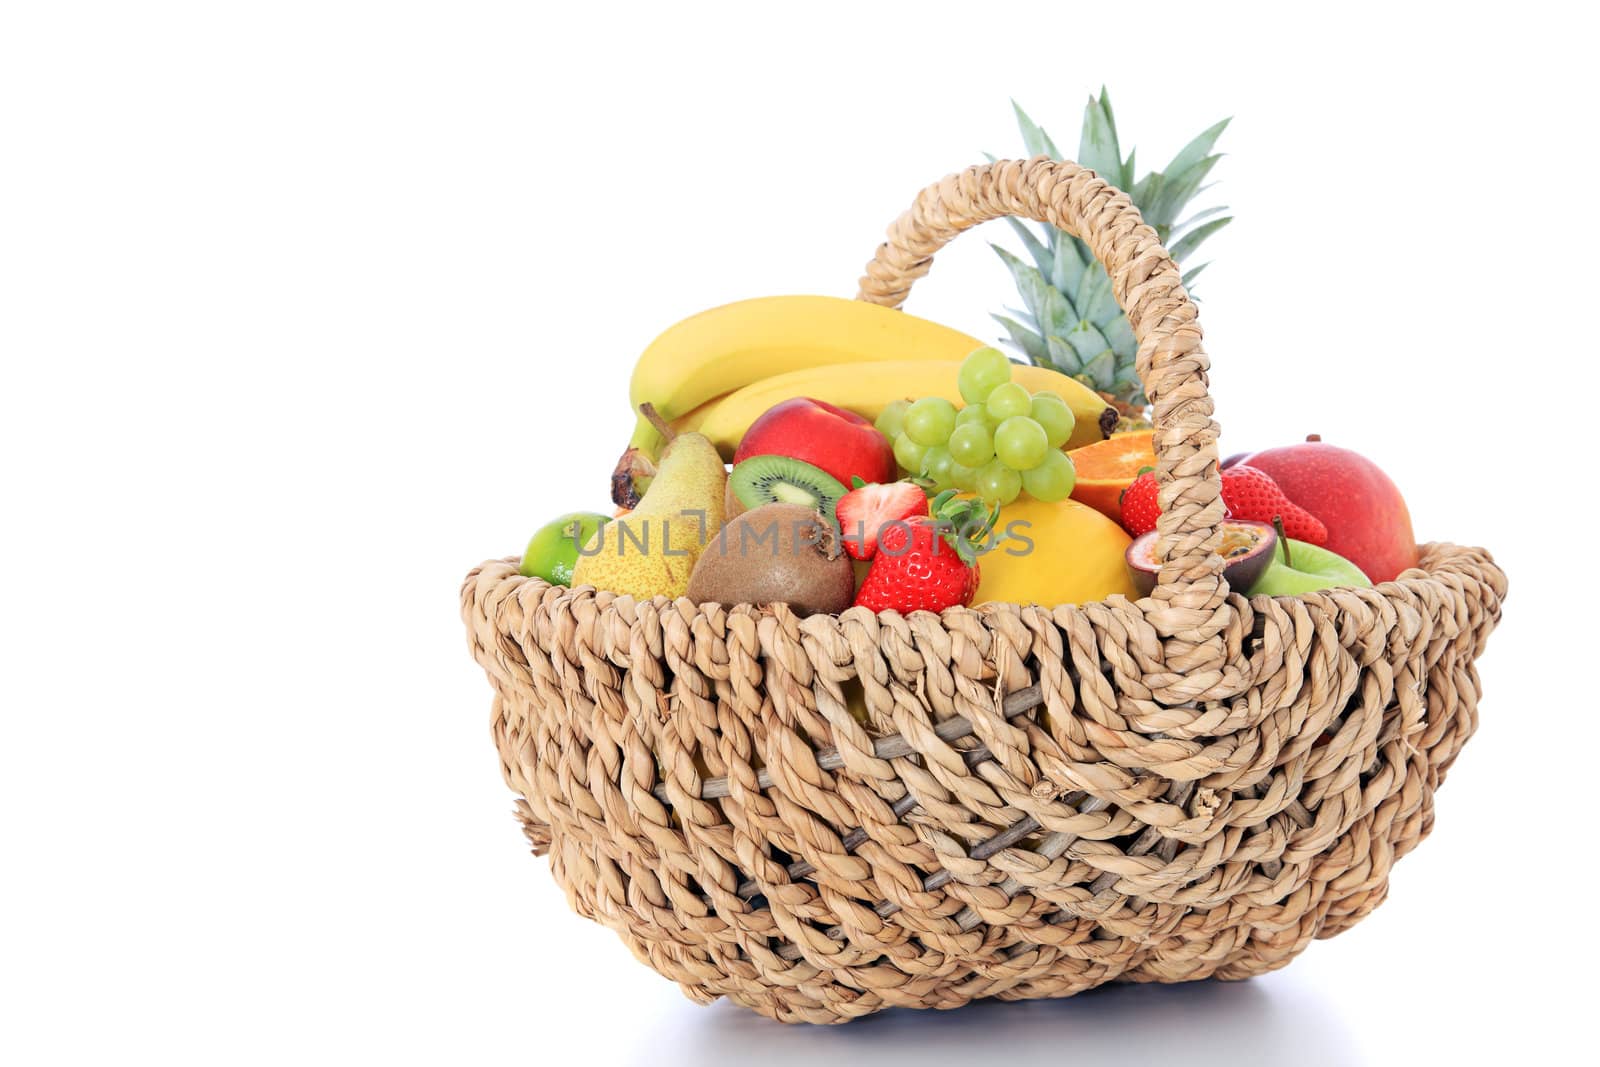 Fruits by kaarsten